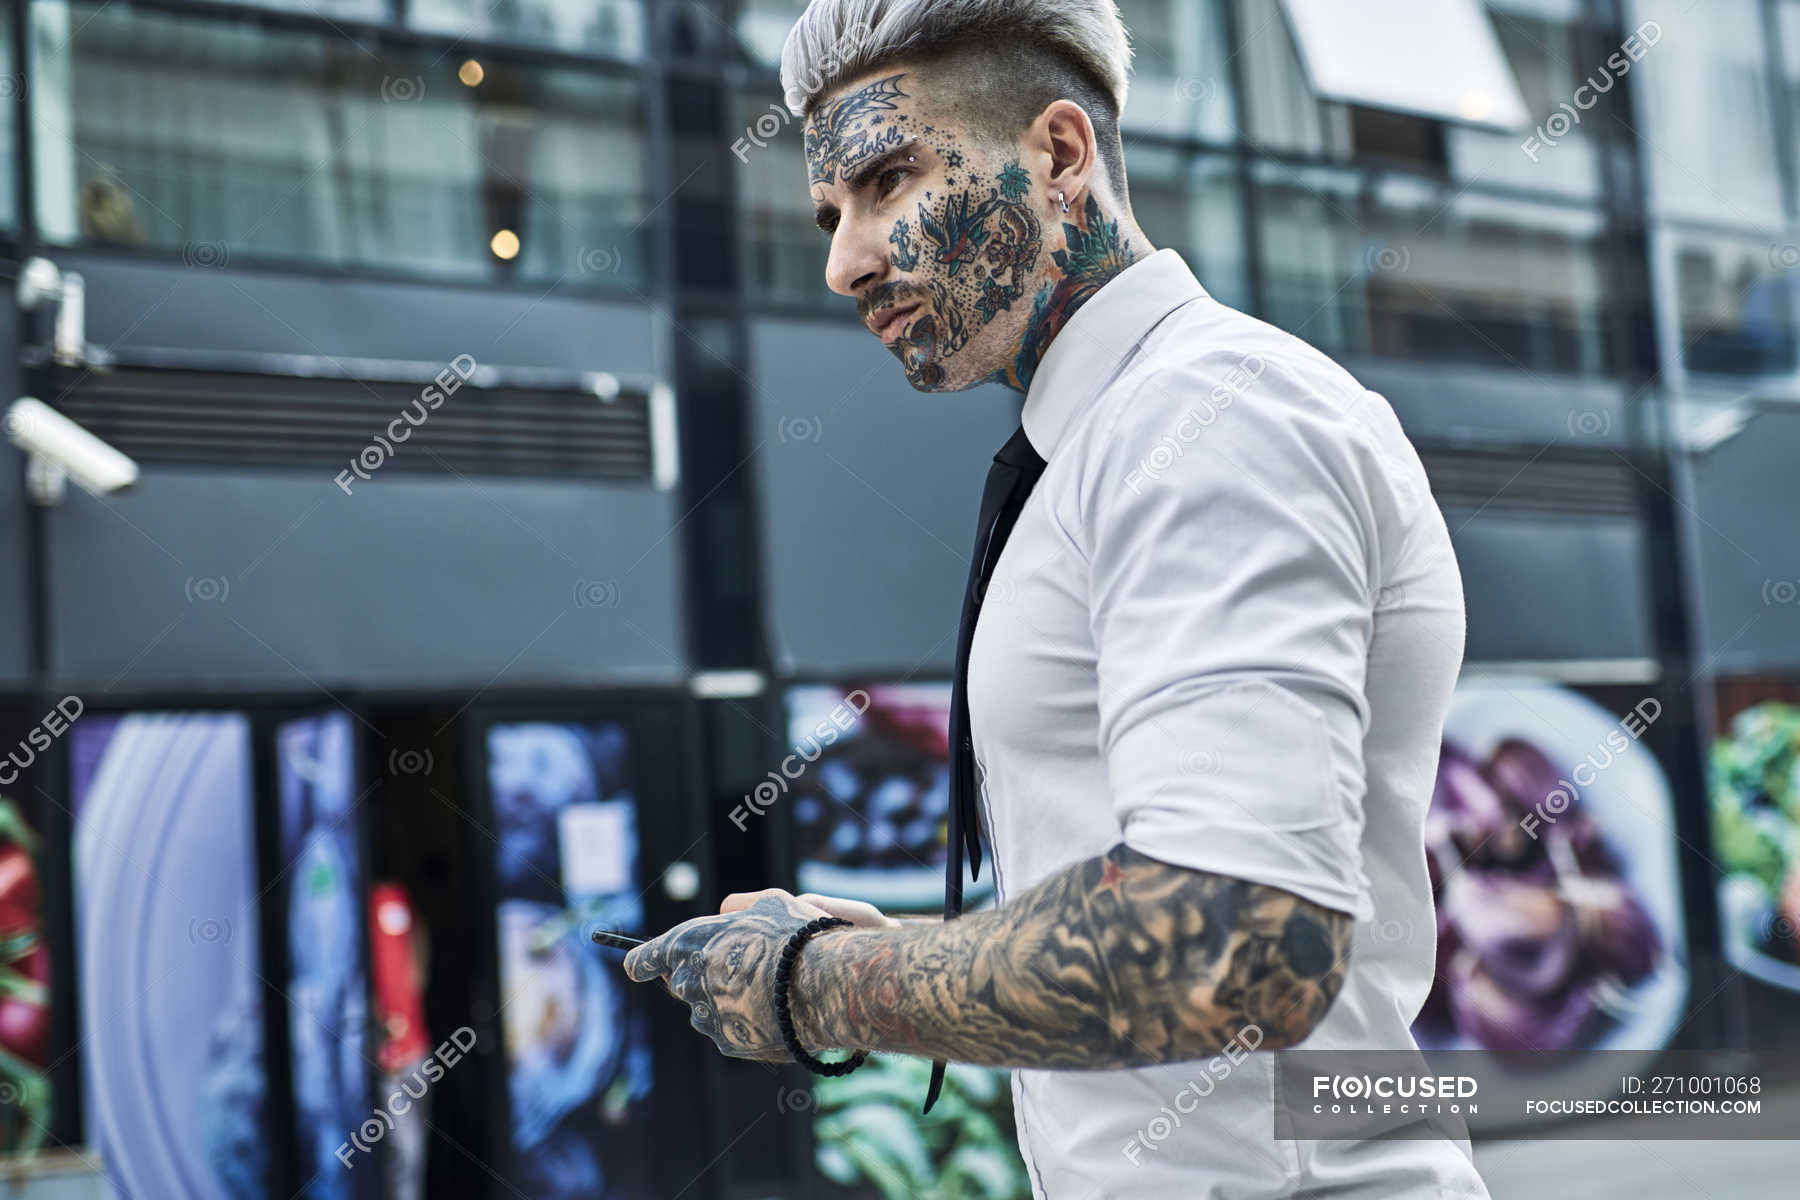 Jeune homme d'affaires au visage tatoué avec smartphone — Taille haute, non  conformiste - Stock Photo | #271001068